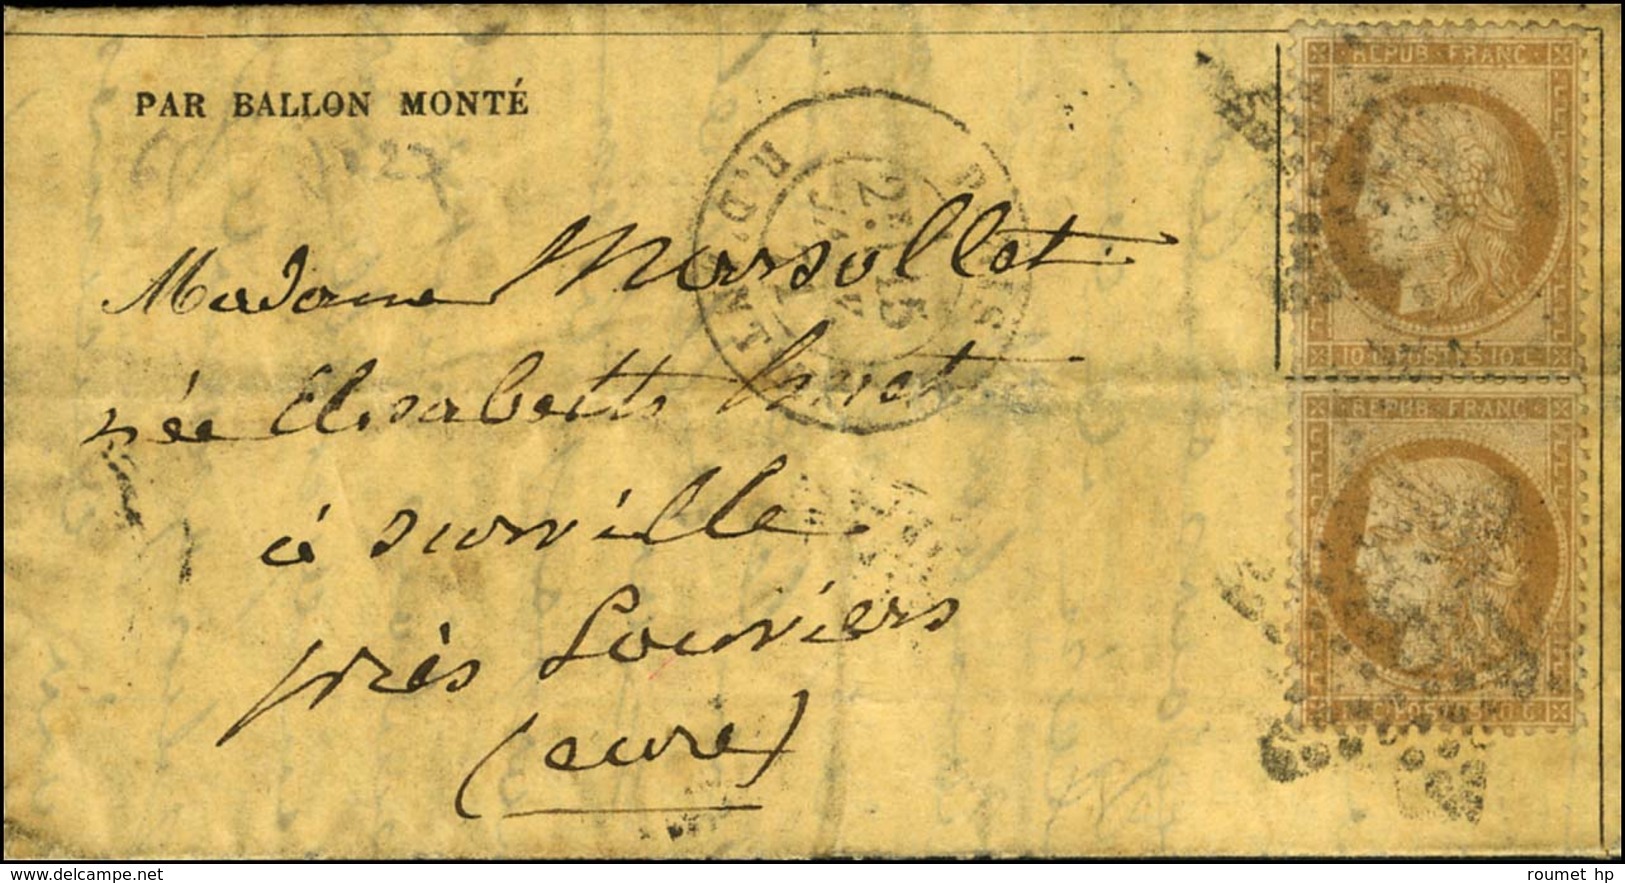 Etoile 8 / N° 36 (2) Càd PARIS / R. D'ANTIN 15 JANV. 71 Sur Gazette Des Absents N° 27 Pour Louviers. Au Verso, Càd Tardi - War 1870